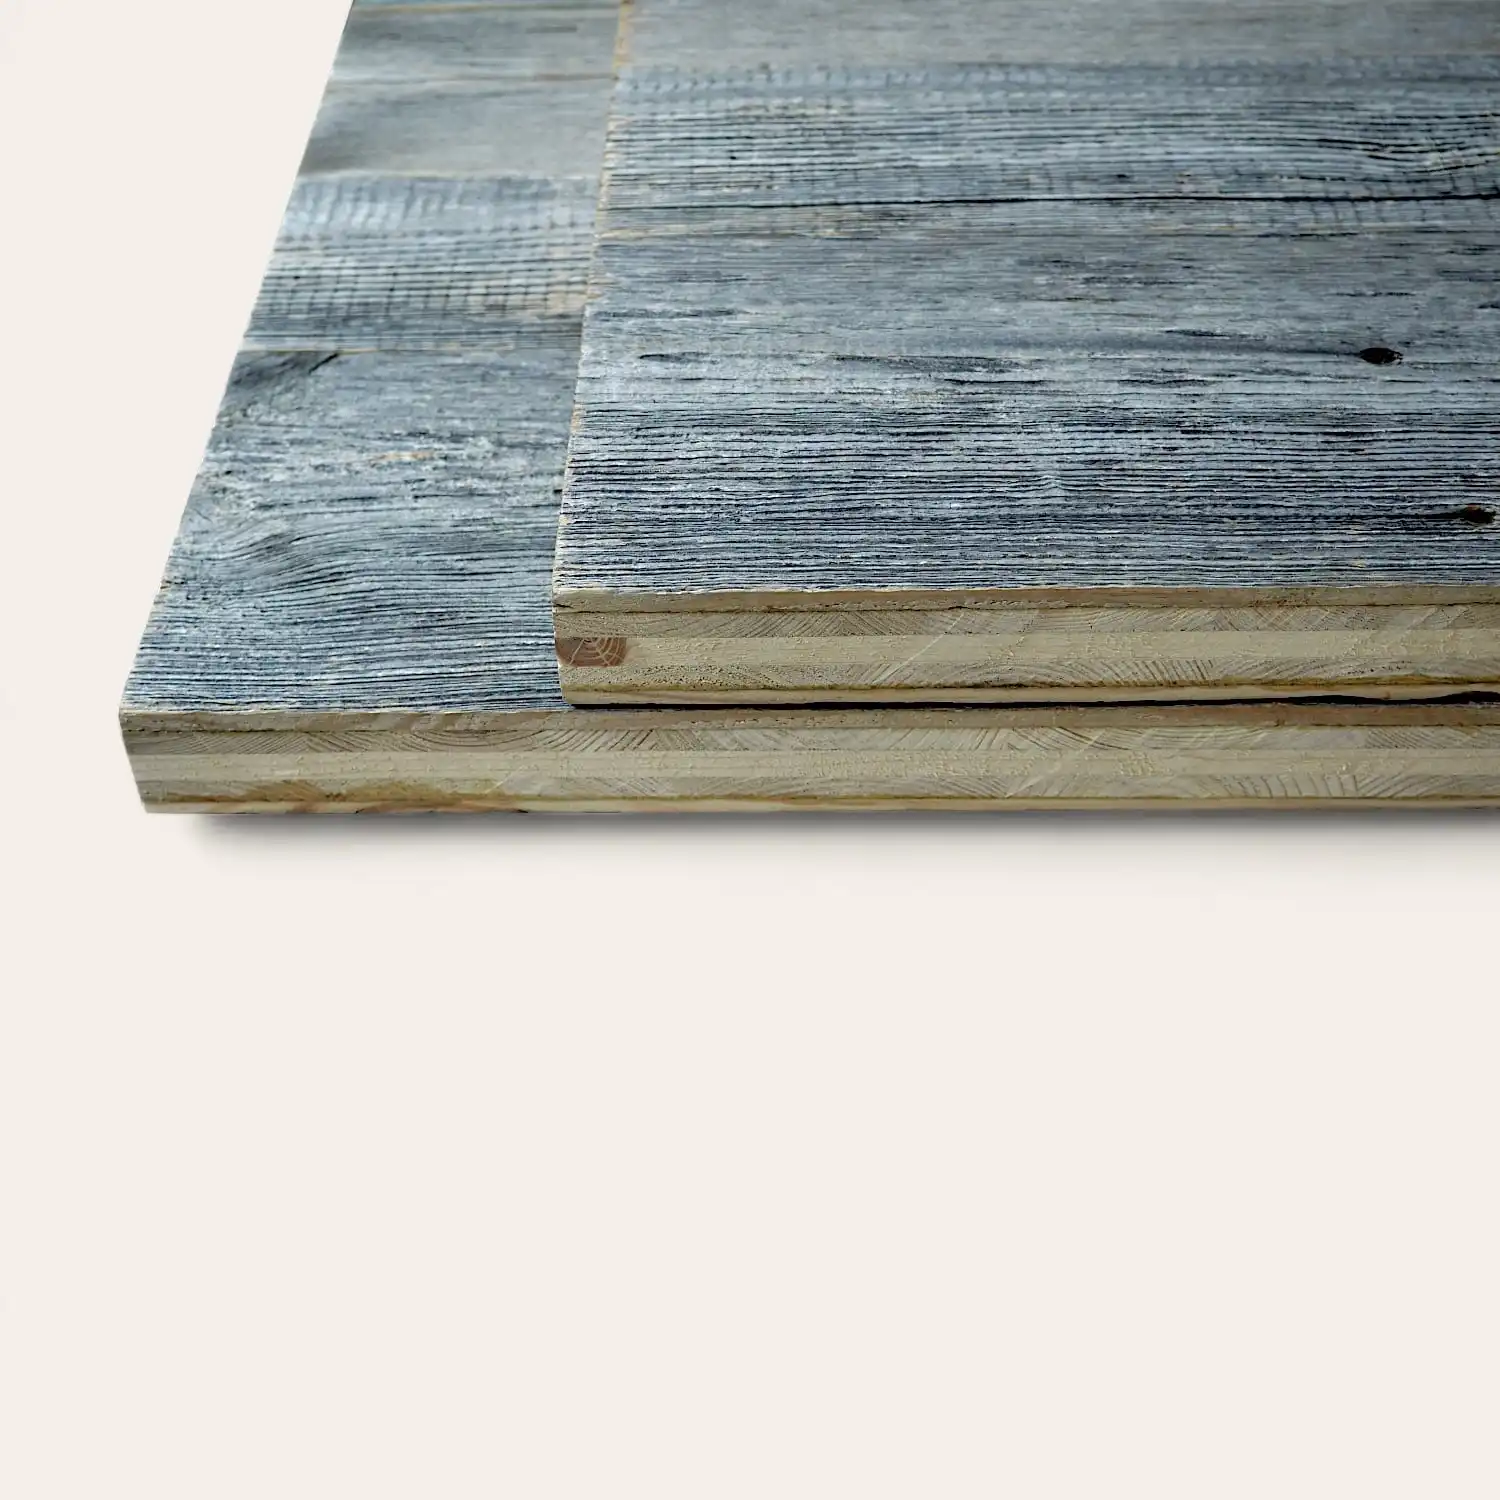  Une pile de planches de bois patinées avec une finition bleu délavé sur fond blanc, étiquetées 